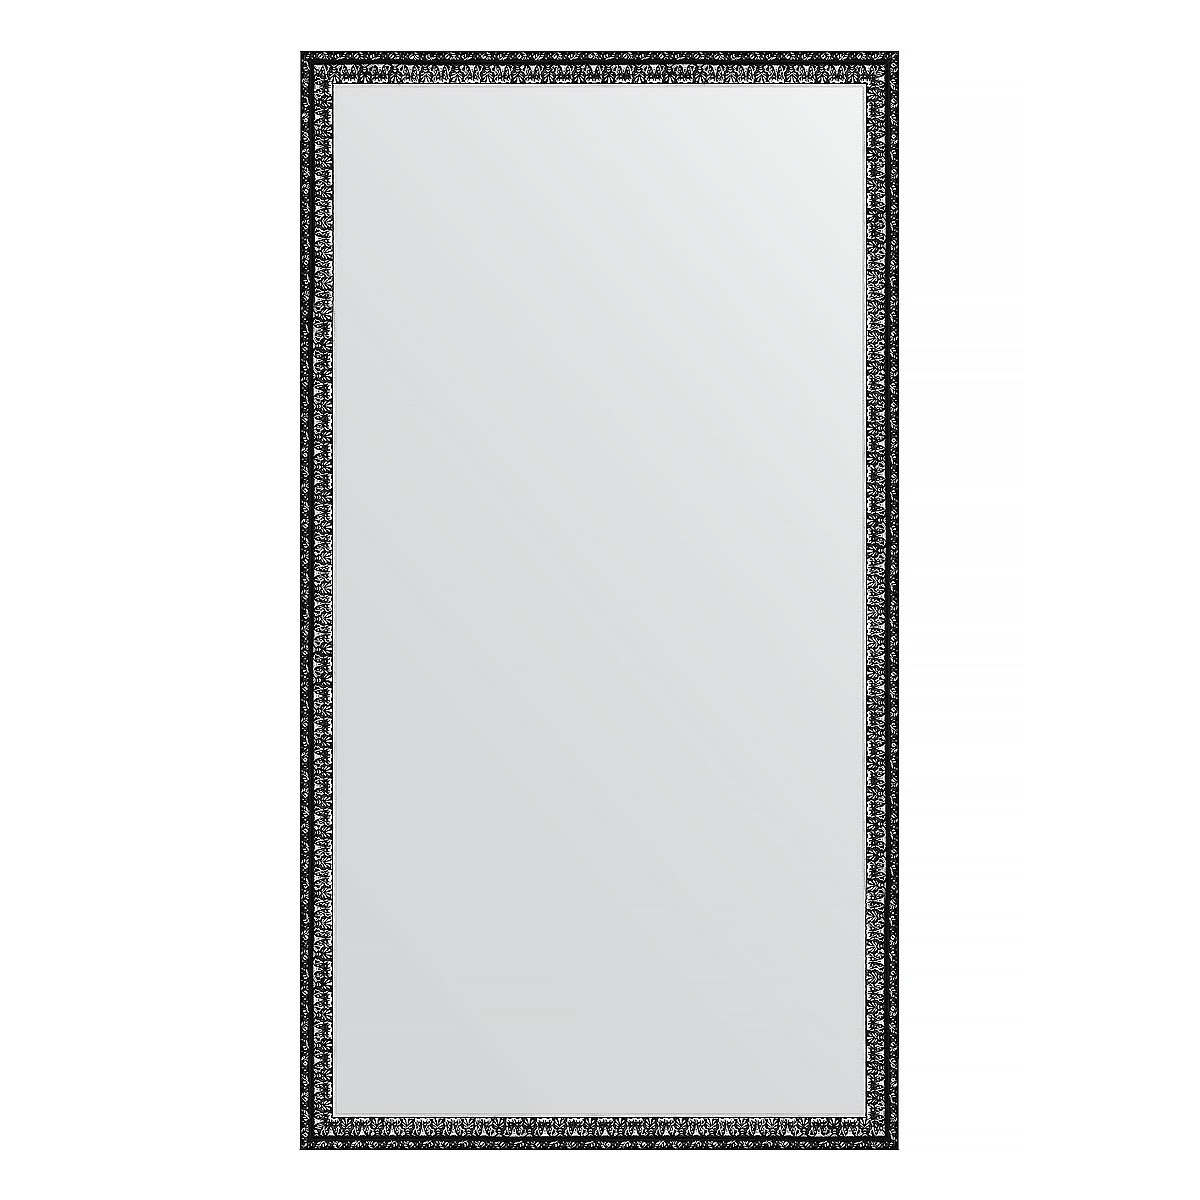 Зеркало в багетной раме Evoform черненое серебро 38 мм 60х110 см зеркало в багетной раме evoform дуб 37 мм 60х110 см